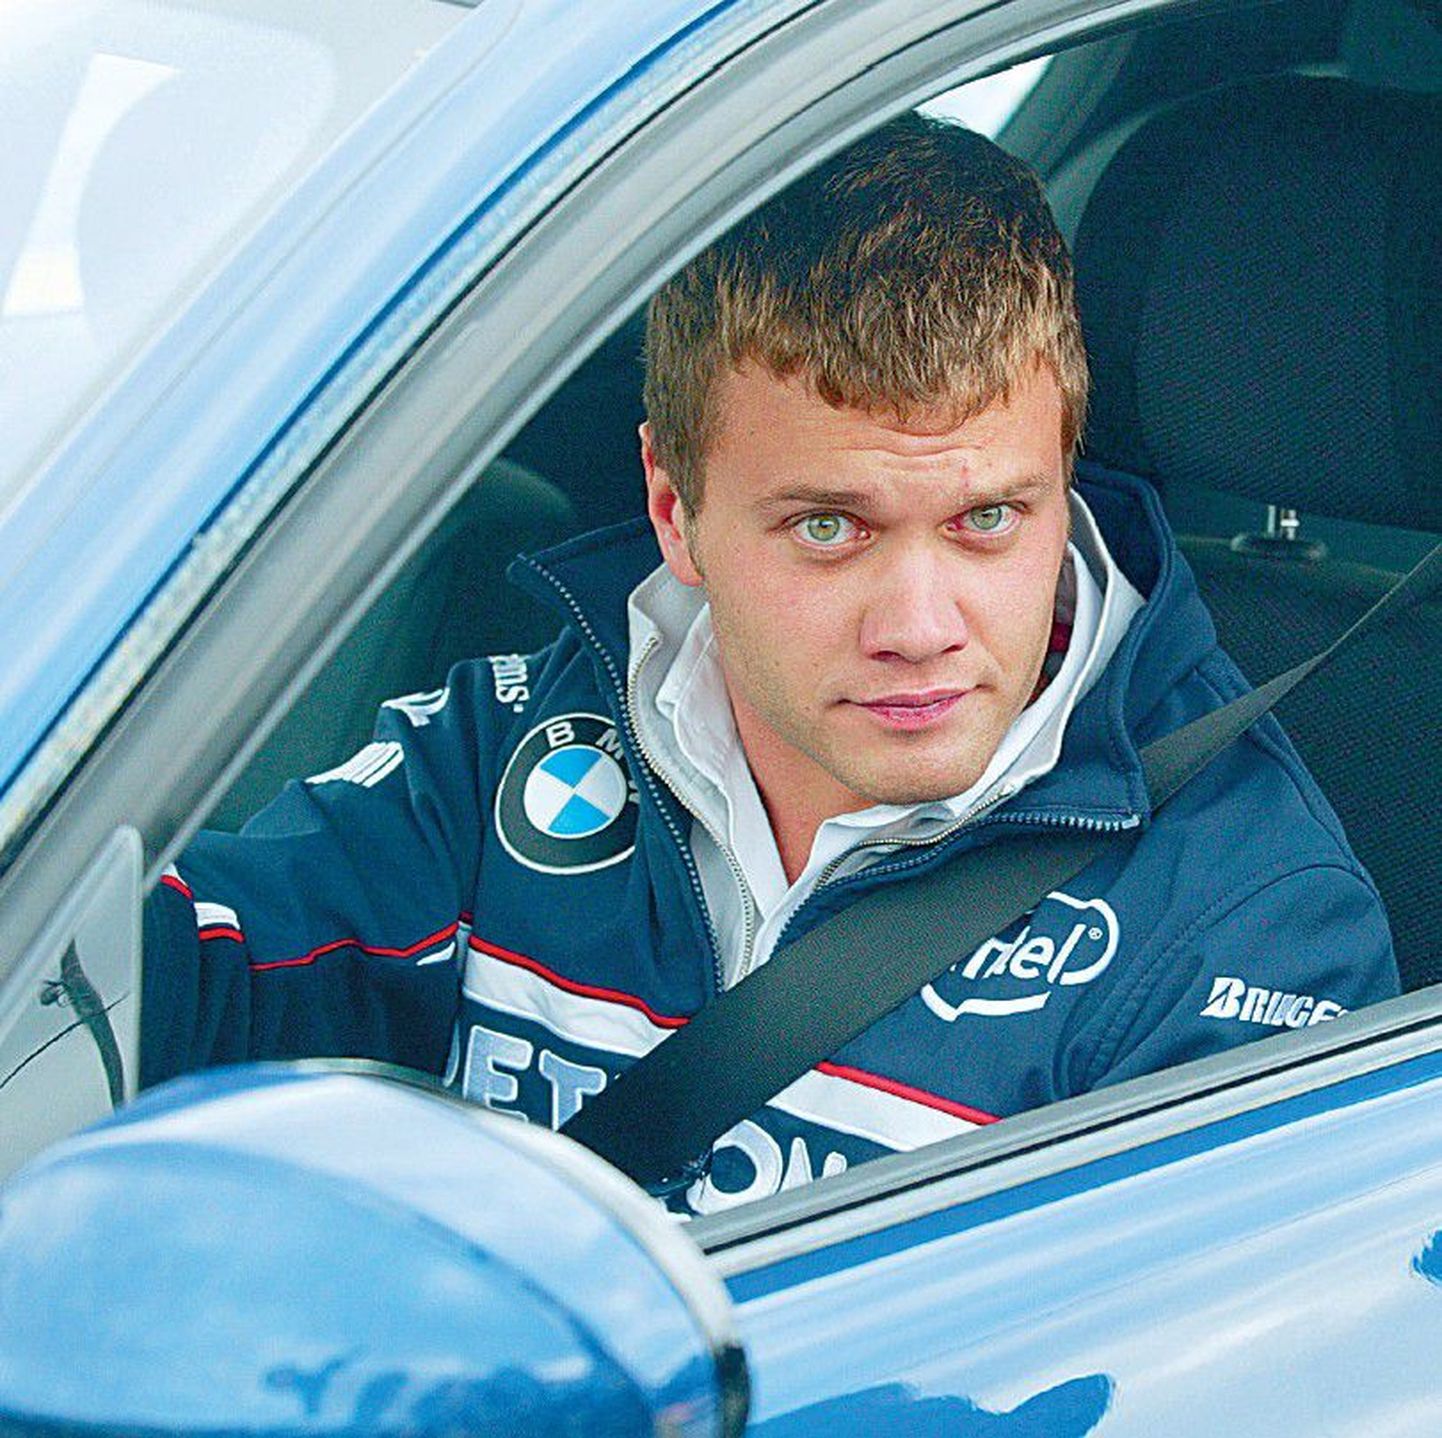 BMW palgale jäänud Marko Asmer otsib võimalusi, et jätkata võidusõitja karjääri.